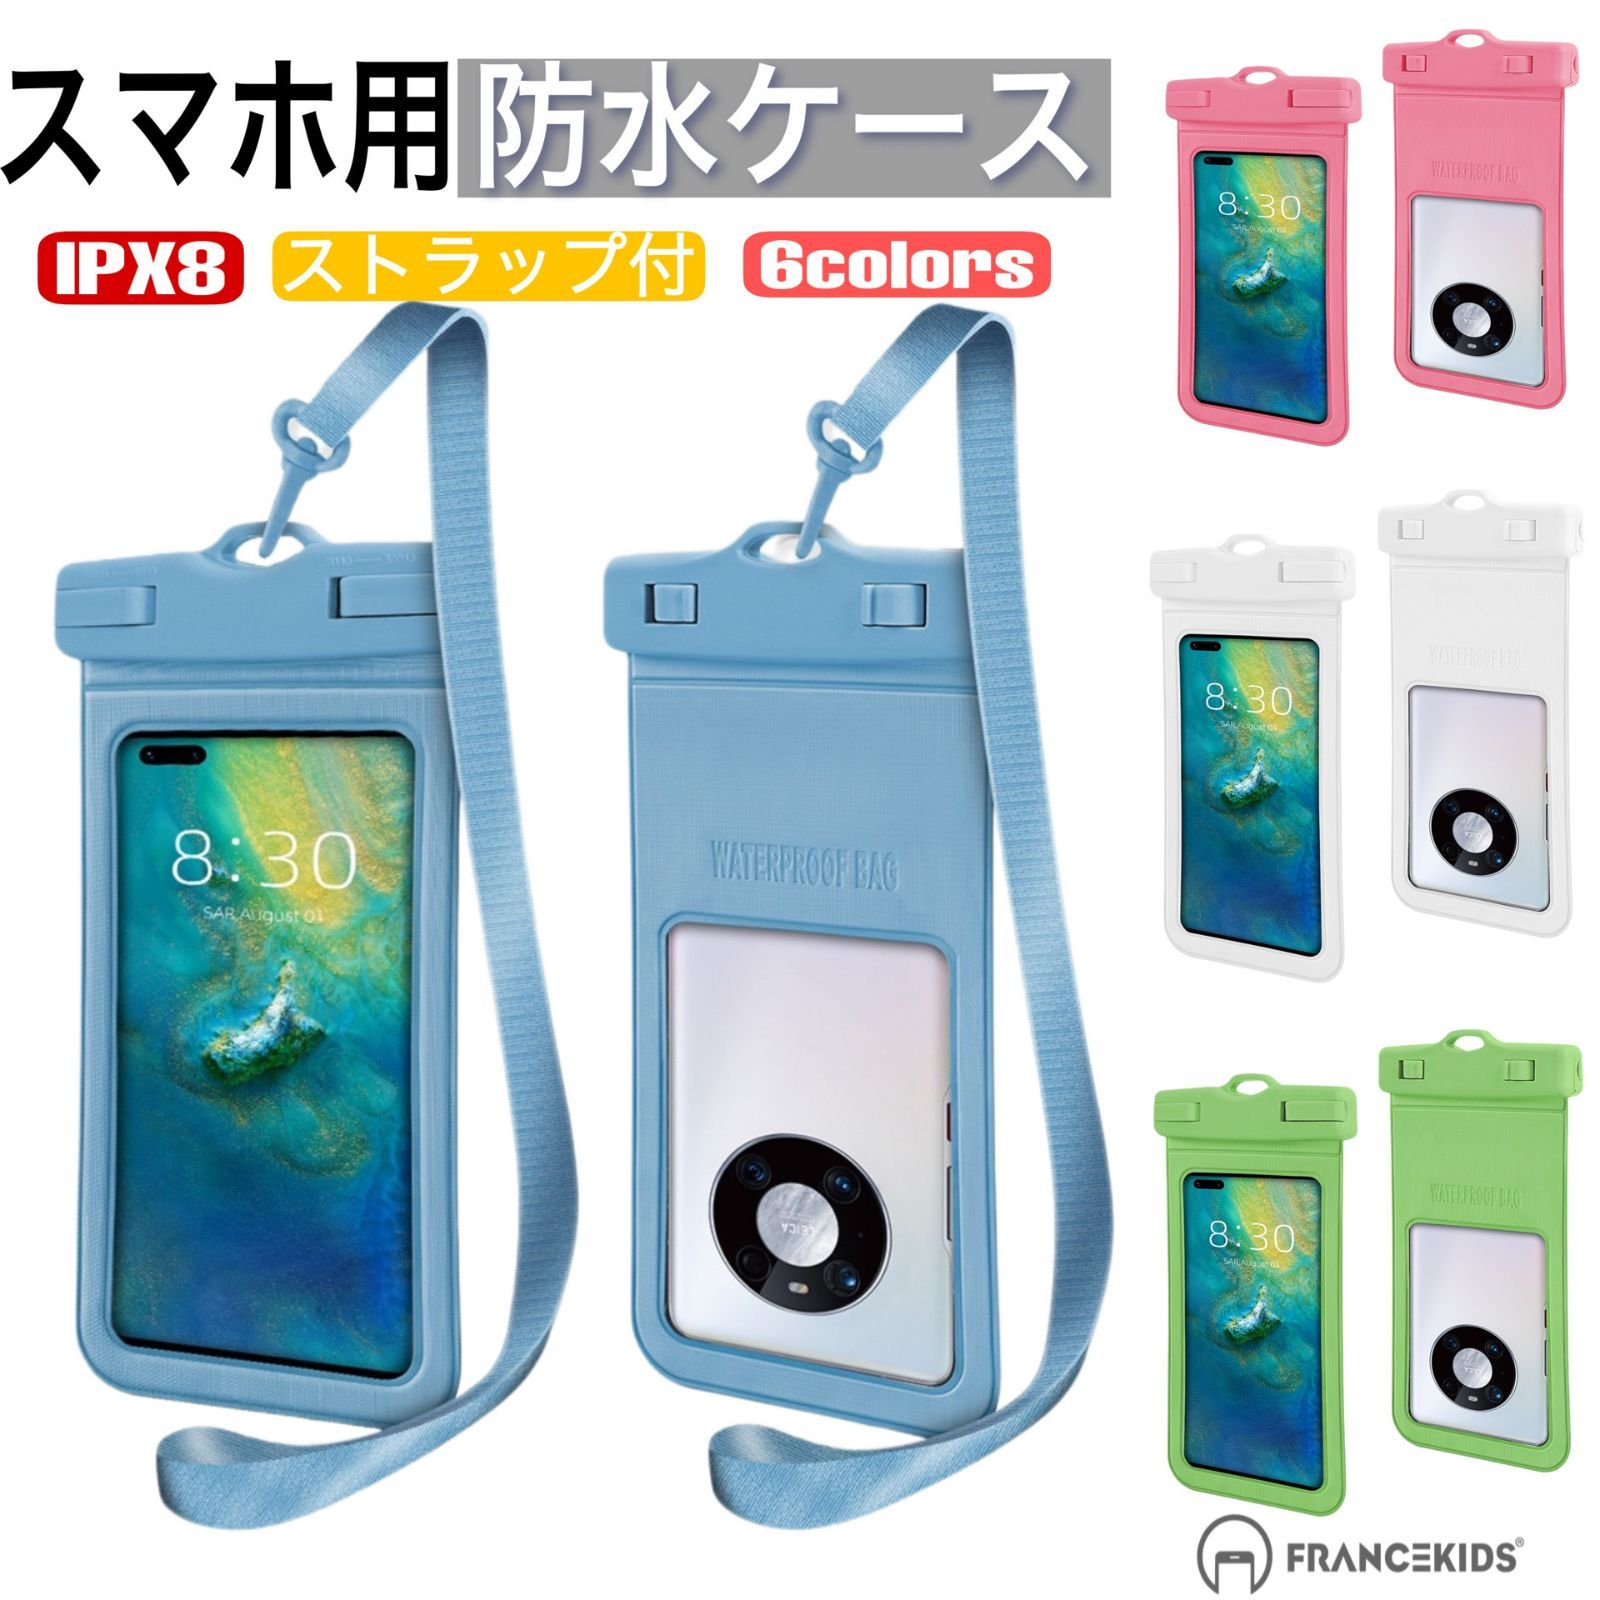 スマホ 防水 ケース iphone 海 プール 携帯 防水ケース IPX8 お風呂 海 風呂 7インチ以下機種対応 顔 FaceID 認証対応